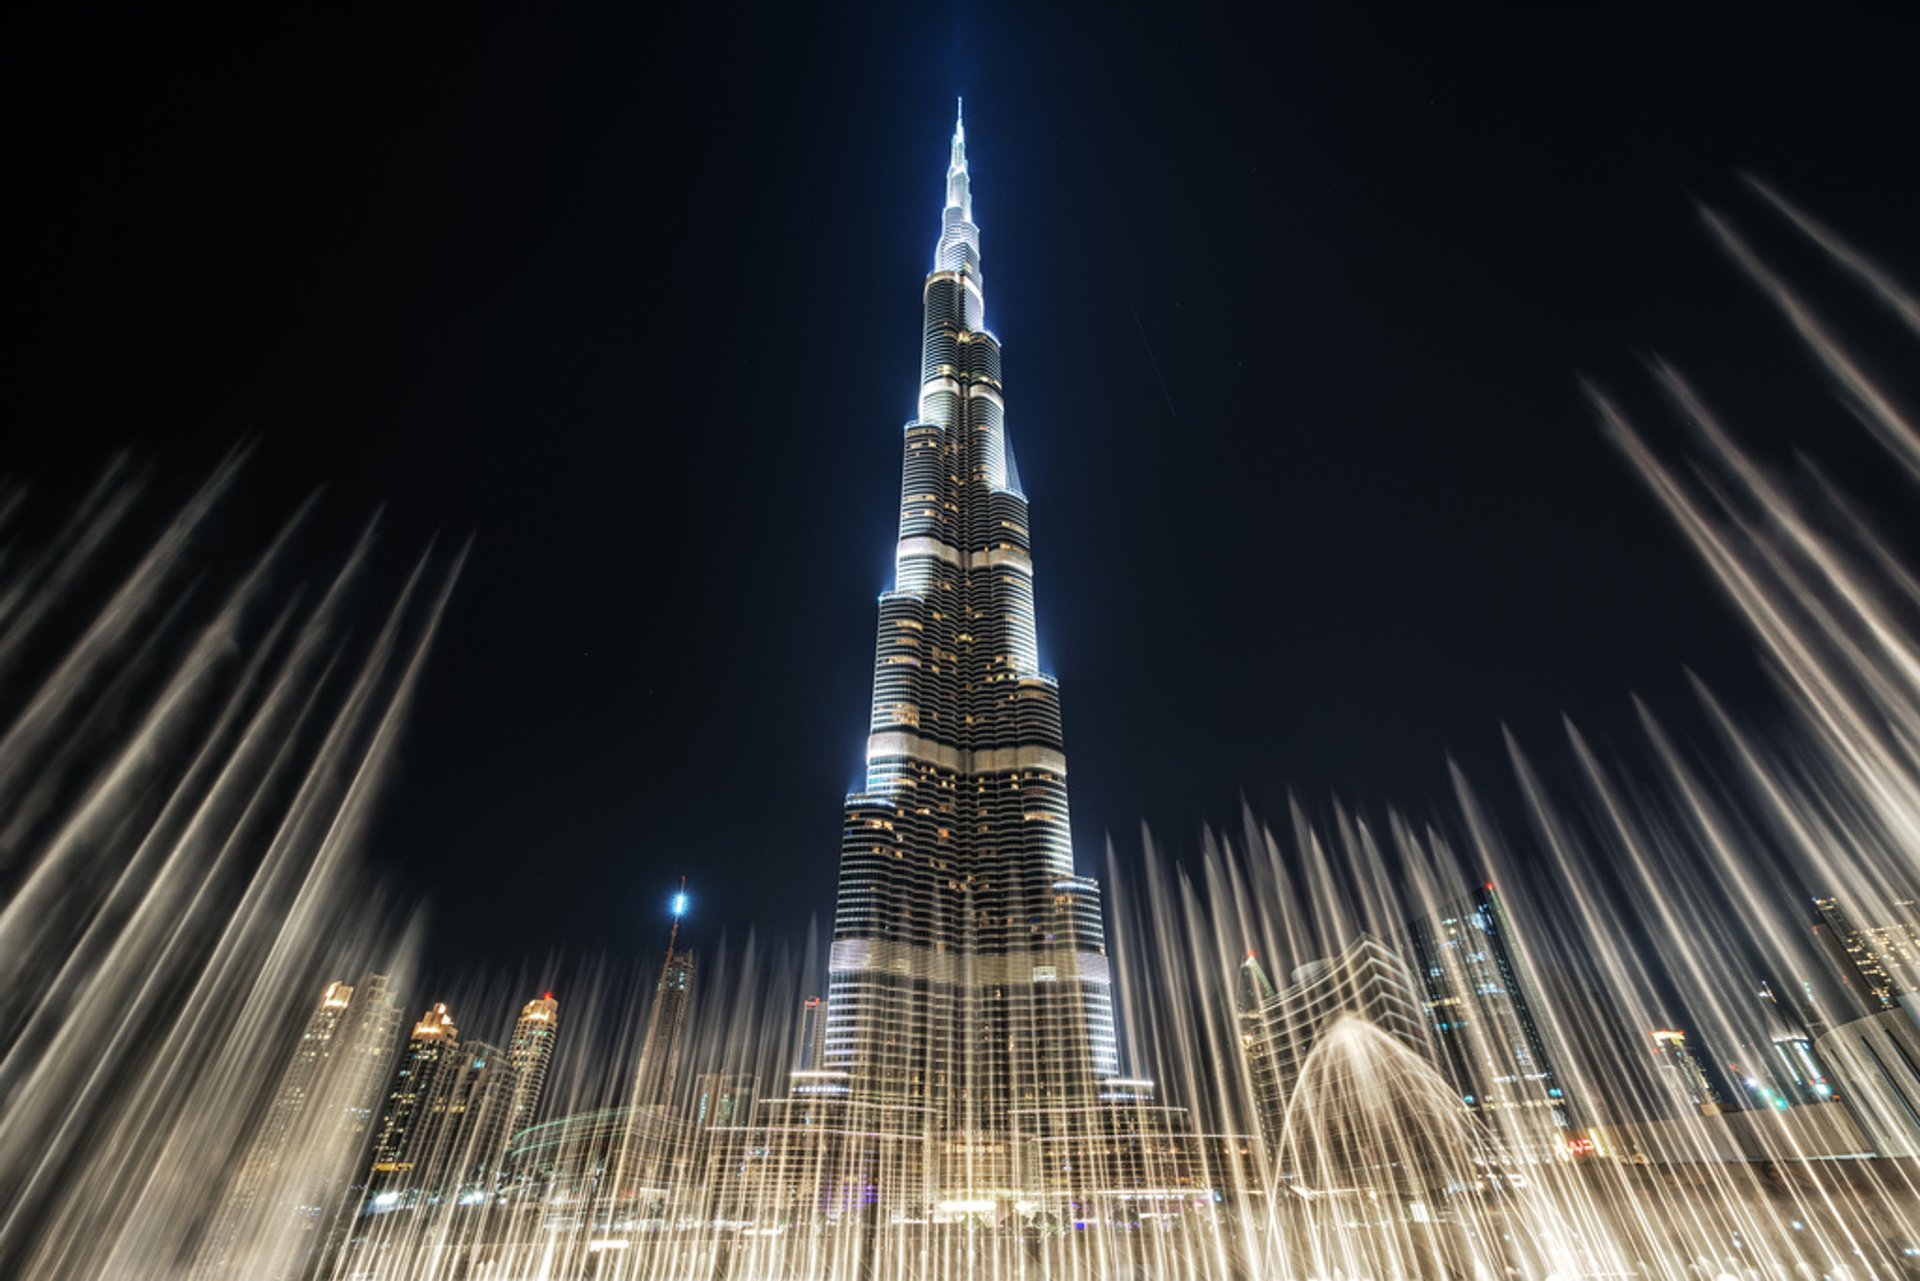 Бурчи халиф. Бурдж-Халифа Дубай. Небоскрёб Бурдж-Хали́фа (Дубай). Башня Бурдж-Халифа (Дубай, ОАЭ, Архитектор Эдриан Смит). Дубай здание Бурдж Халифа.